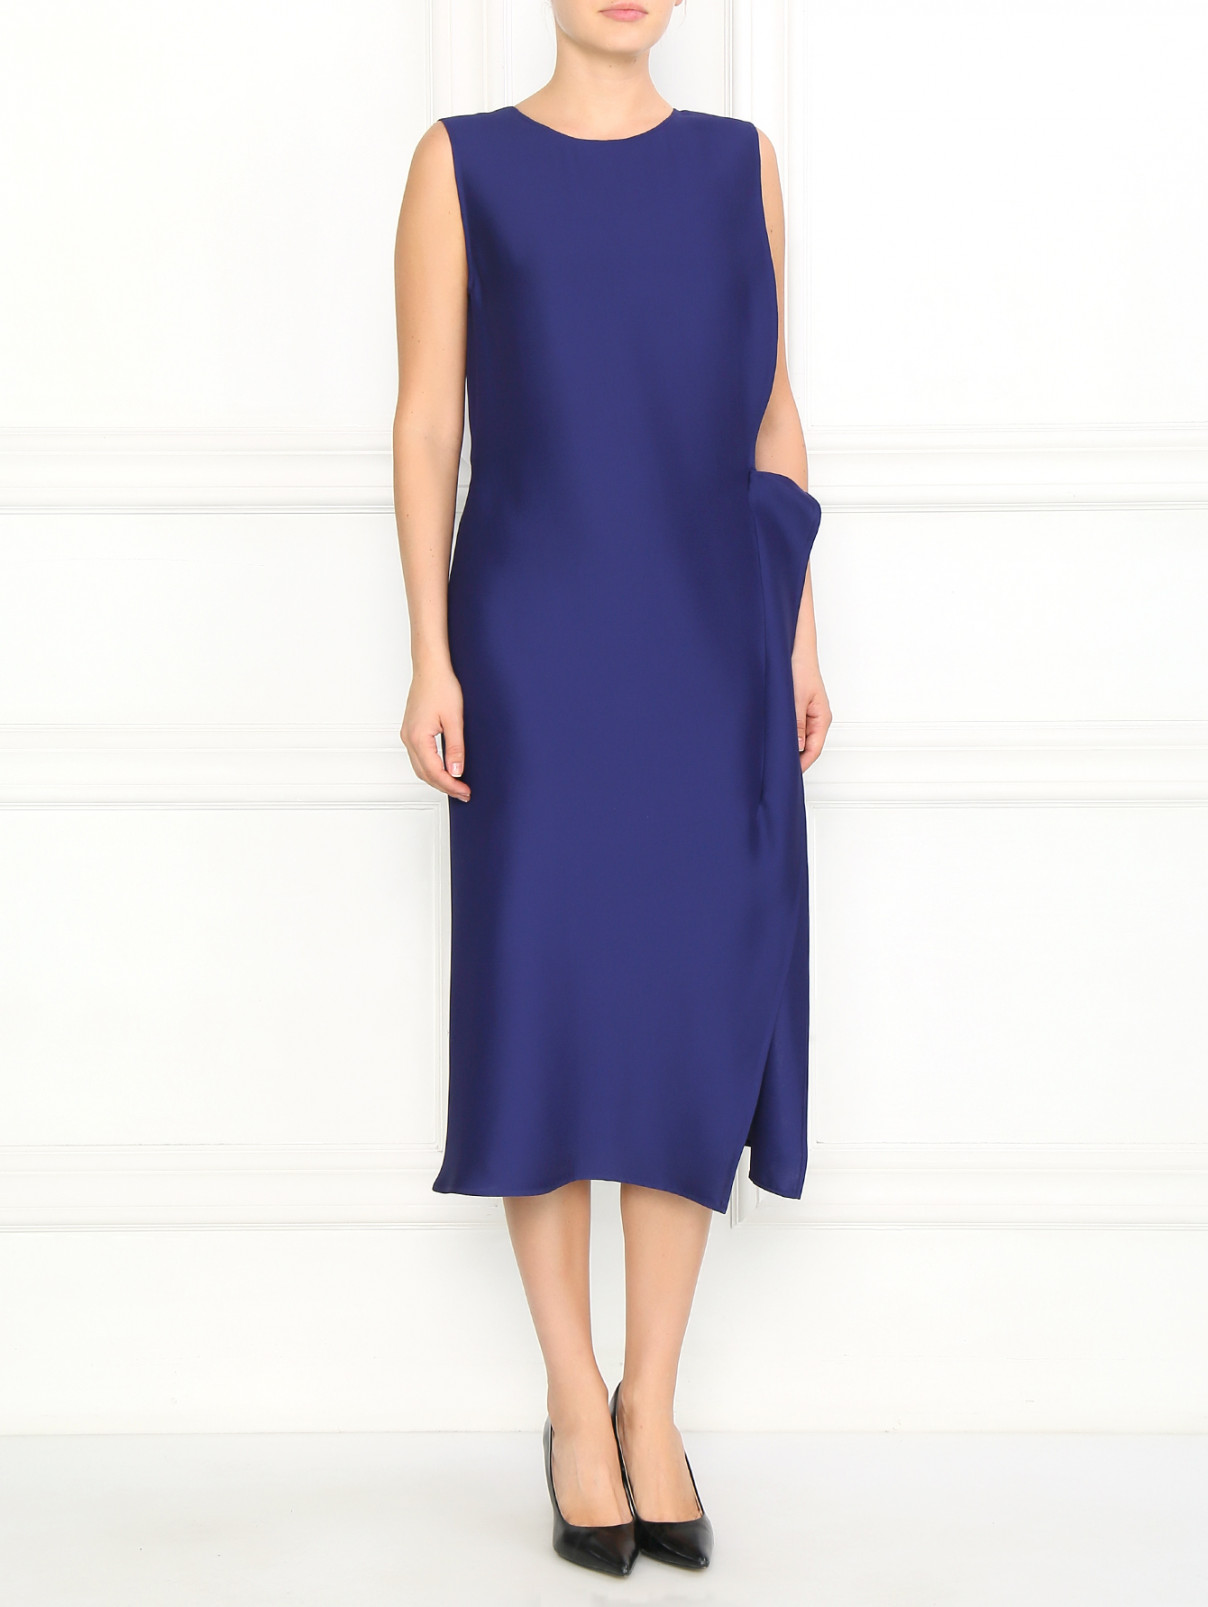 Платье асимметричного кроя Jil Sander  –  Модель Общий вид  – Цвет:  Фиолетовый